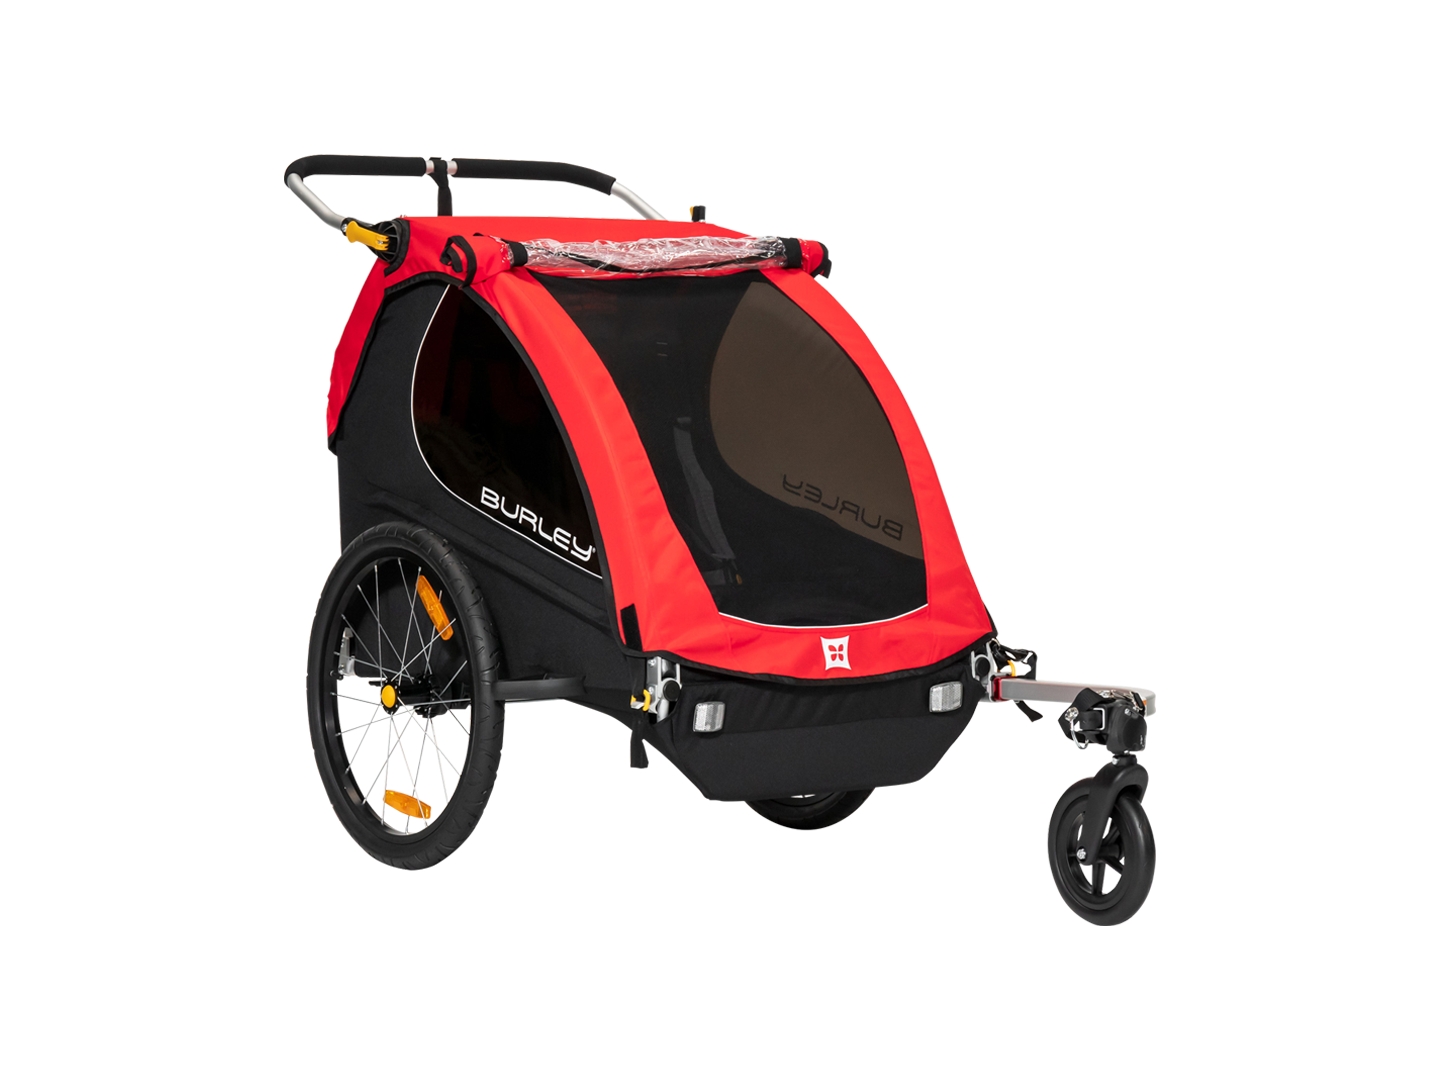 burley two wheel stroller kit